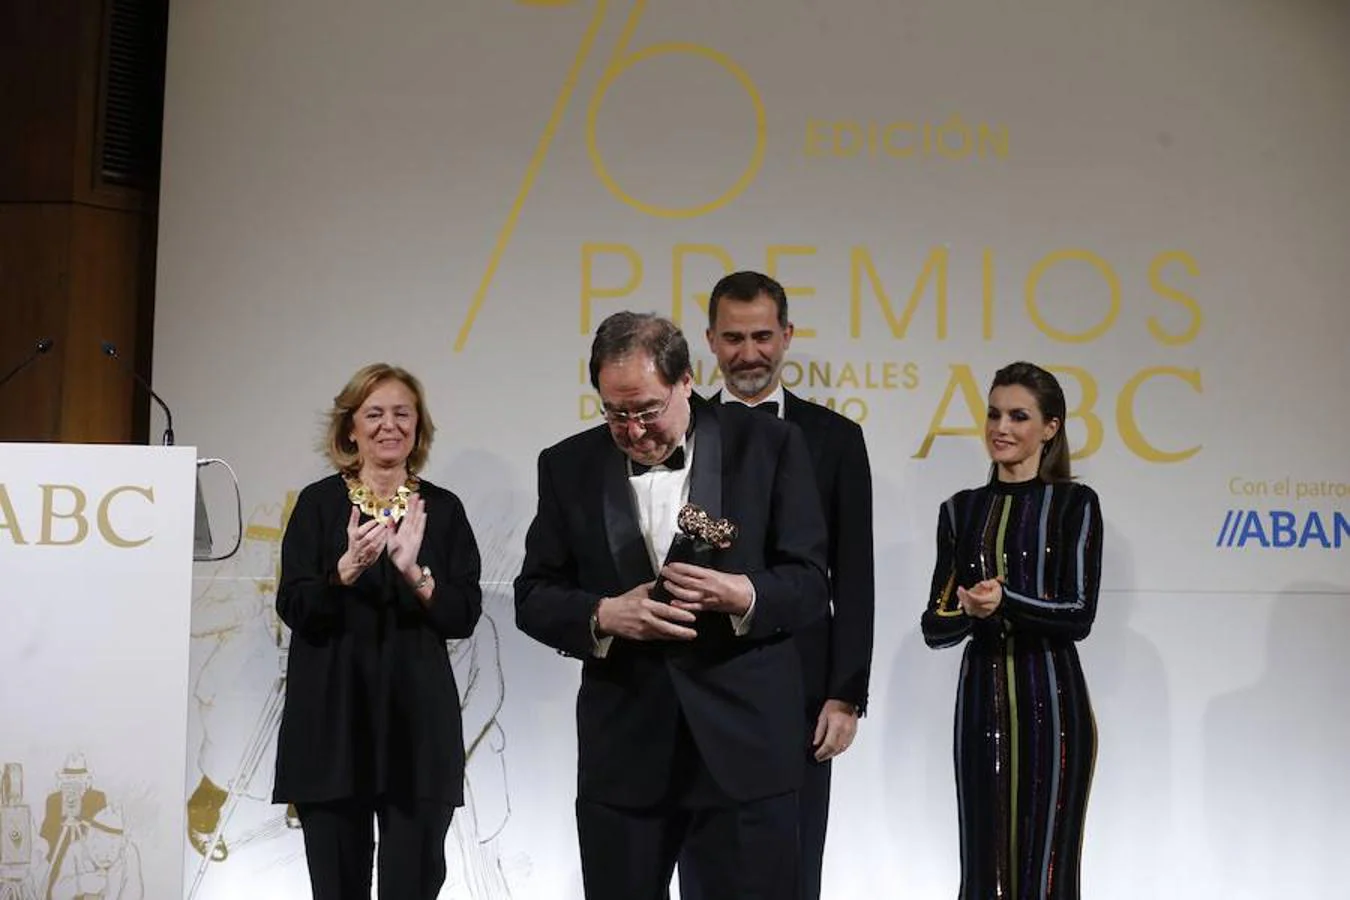 Francesc de Carrera, catedrático de Derecho Constitucional en la Universidad Autónoma de Barcelona (UAB), recibe su Premio Mariano de Cavia